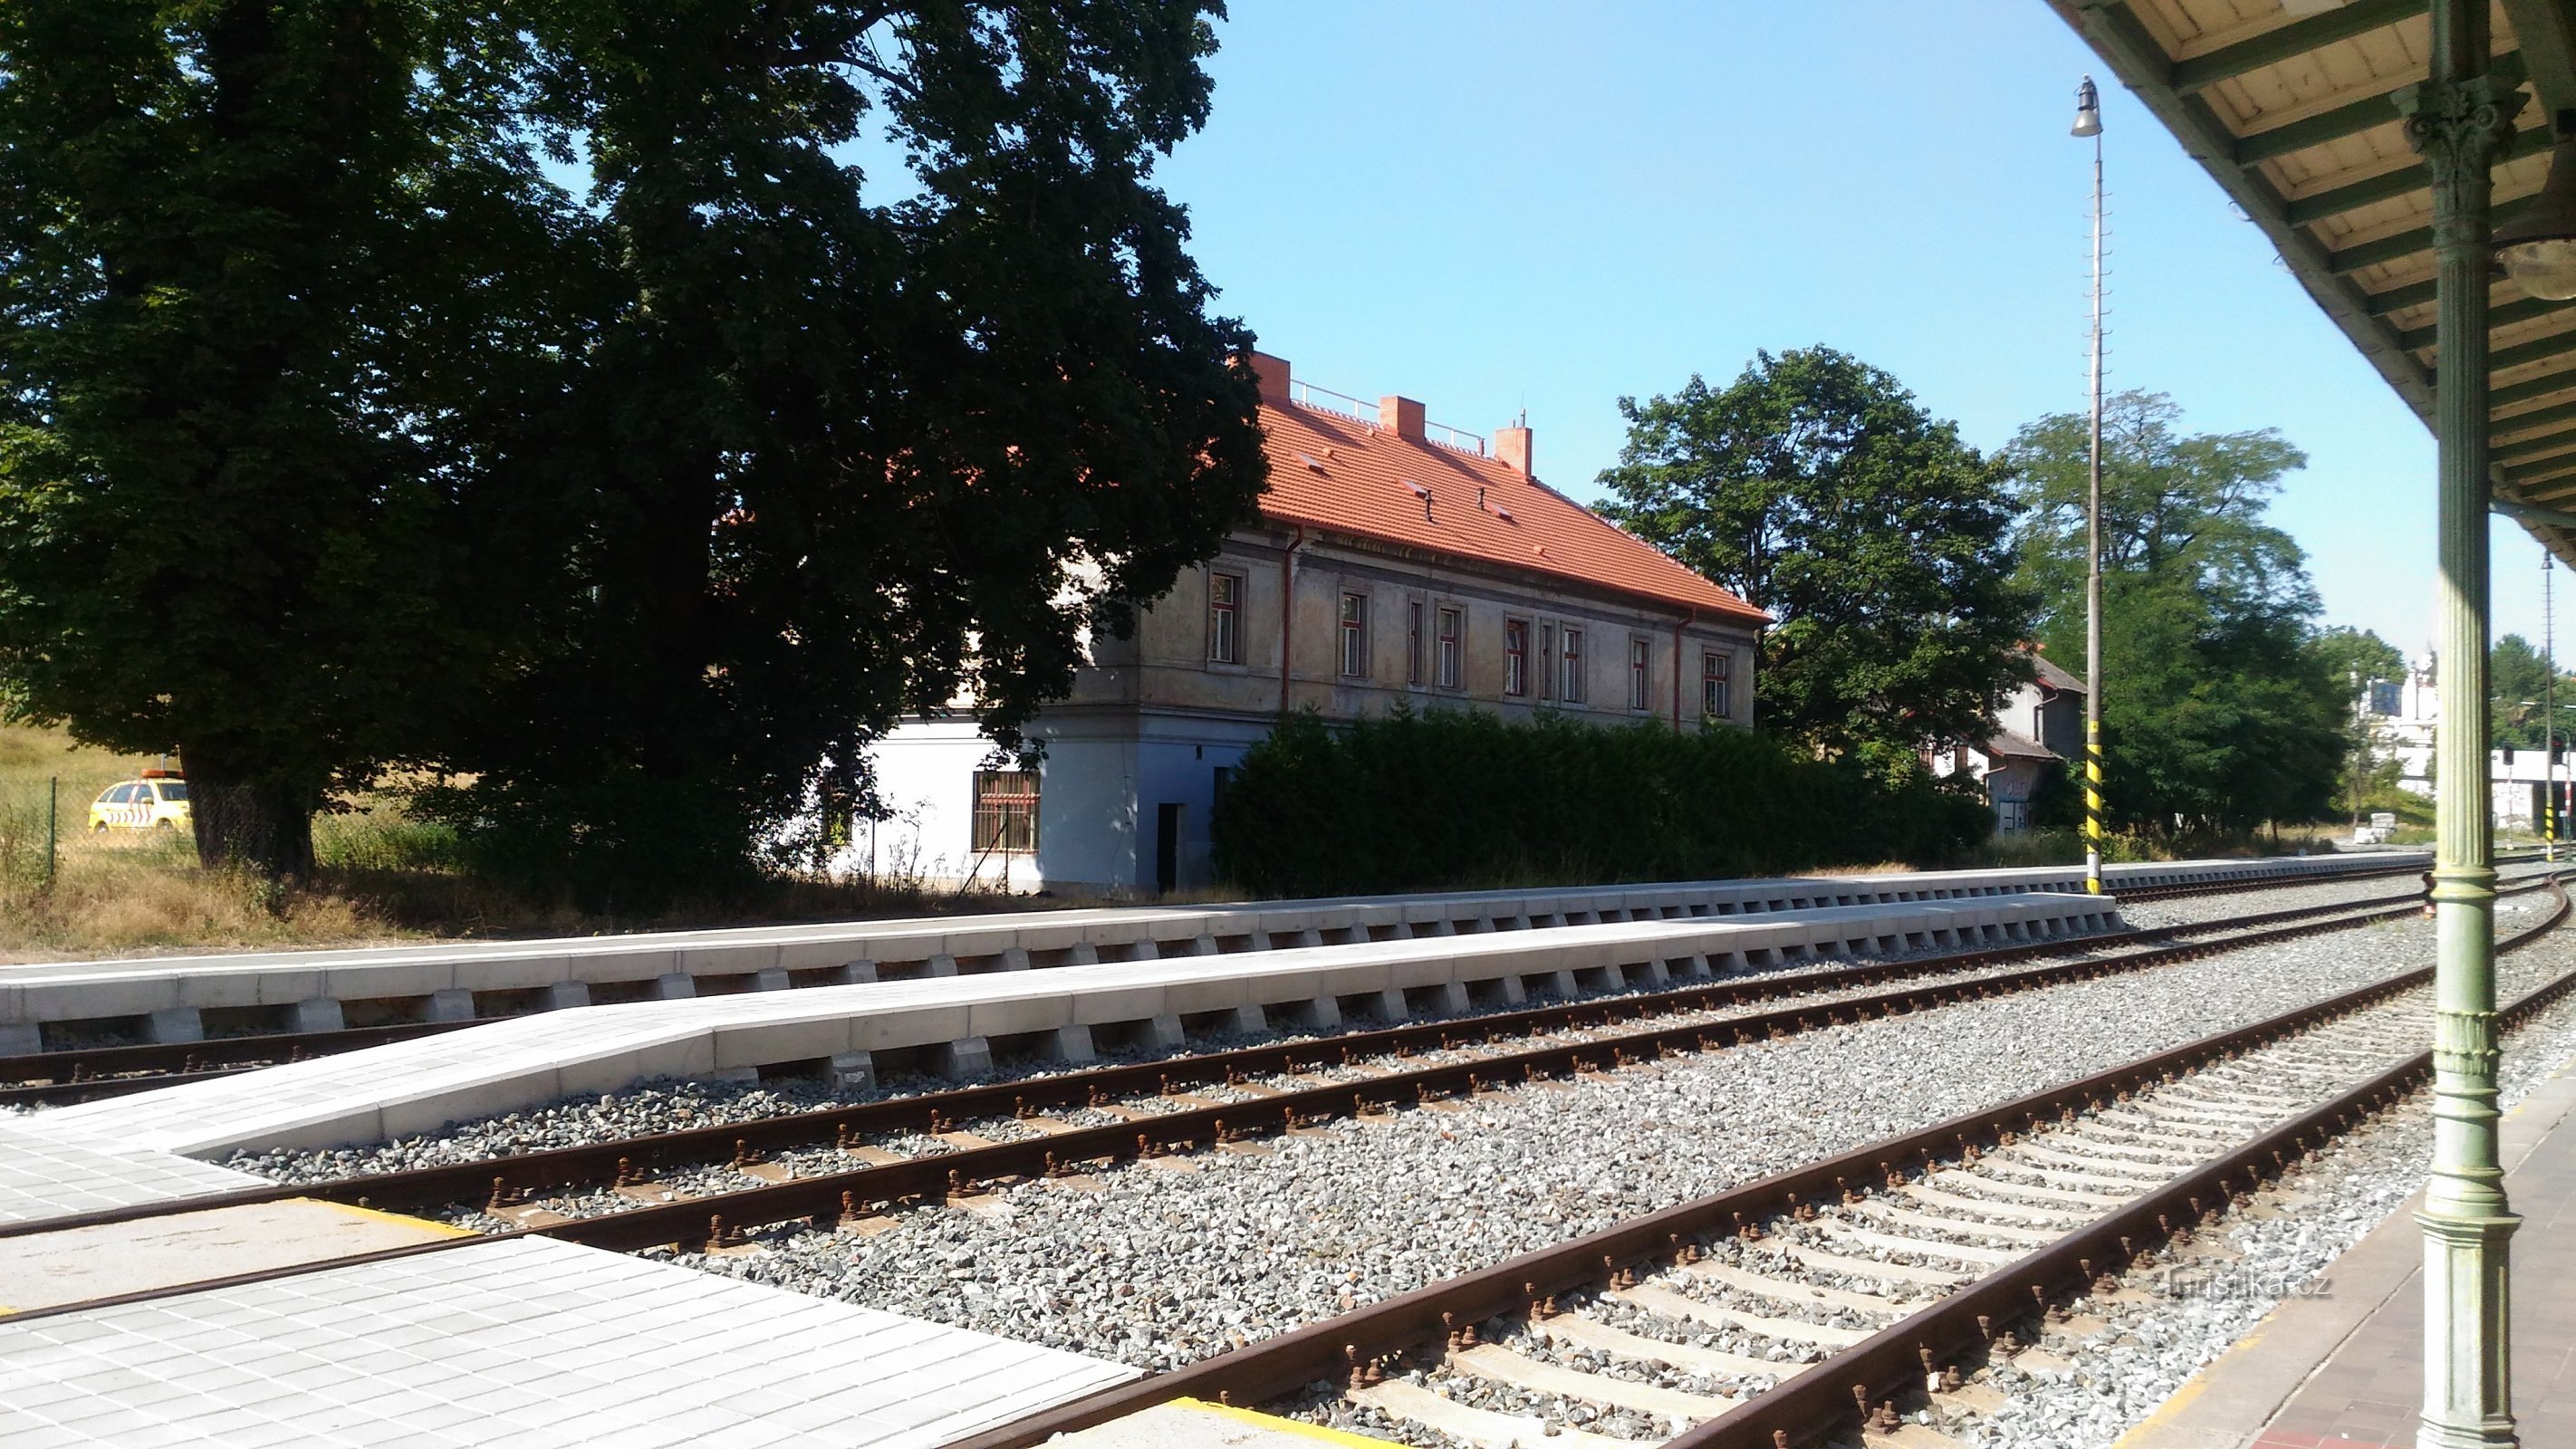 Nekdanja železniška postaja konjske vprege Praga - Bruska.